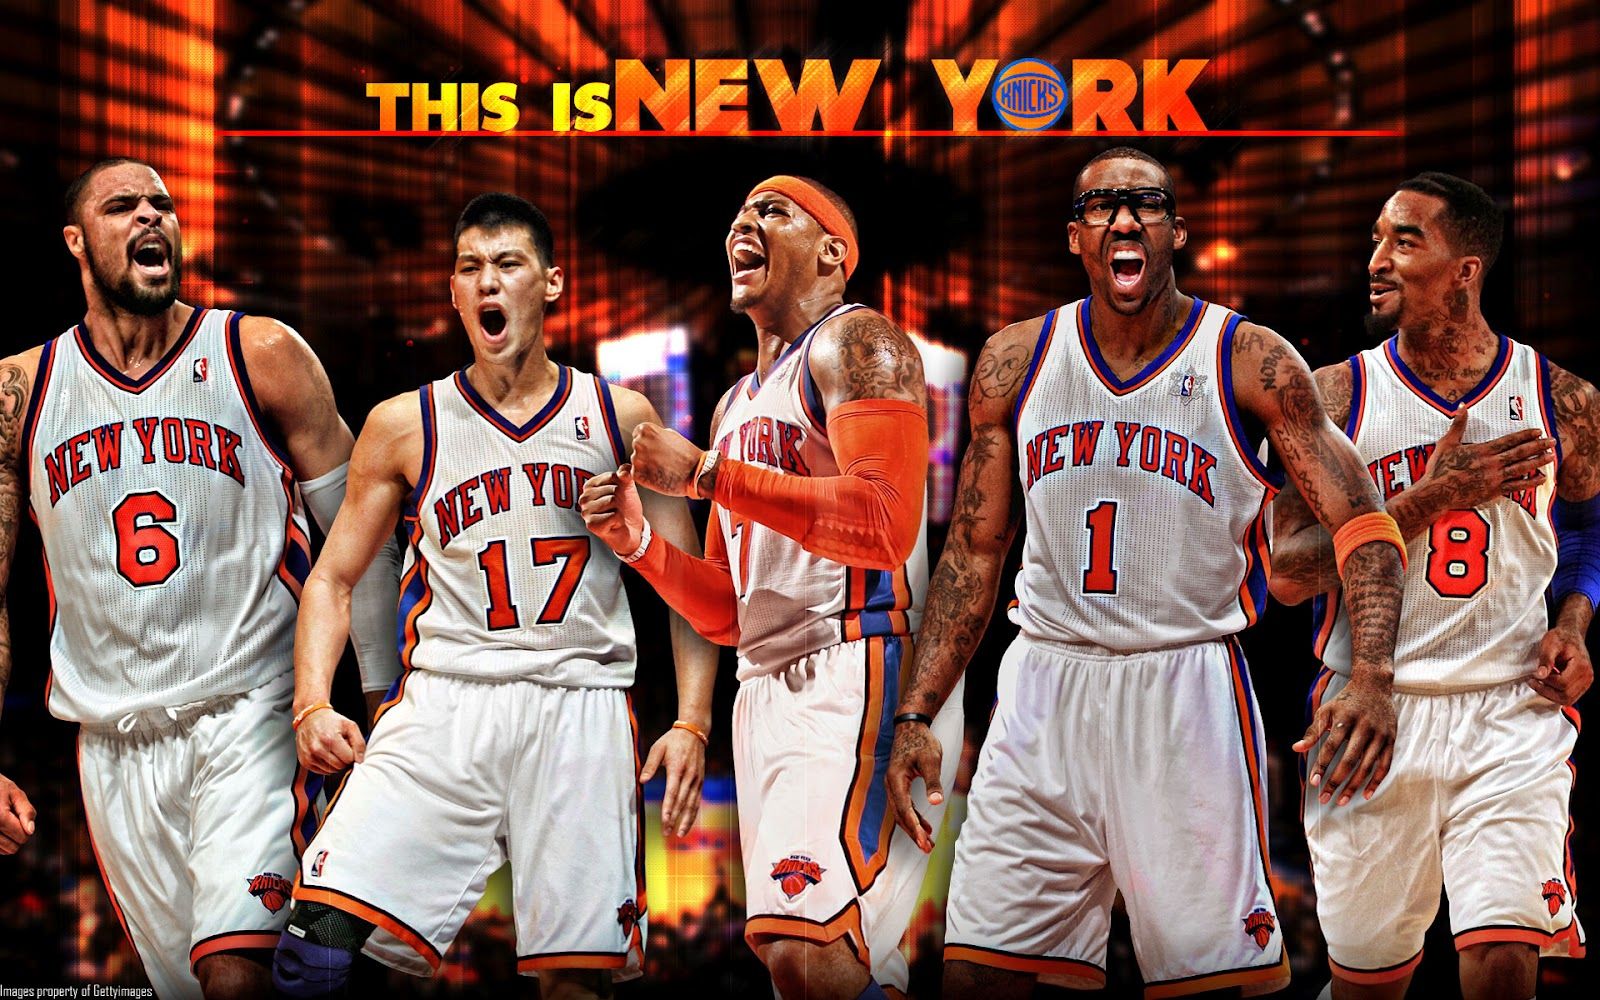 HD wallpaper, Squad, Hd, New, Wallpaper, York, Knicks